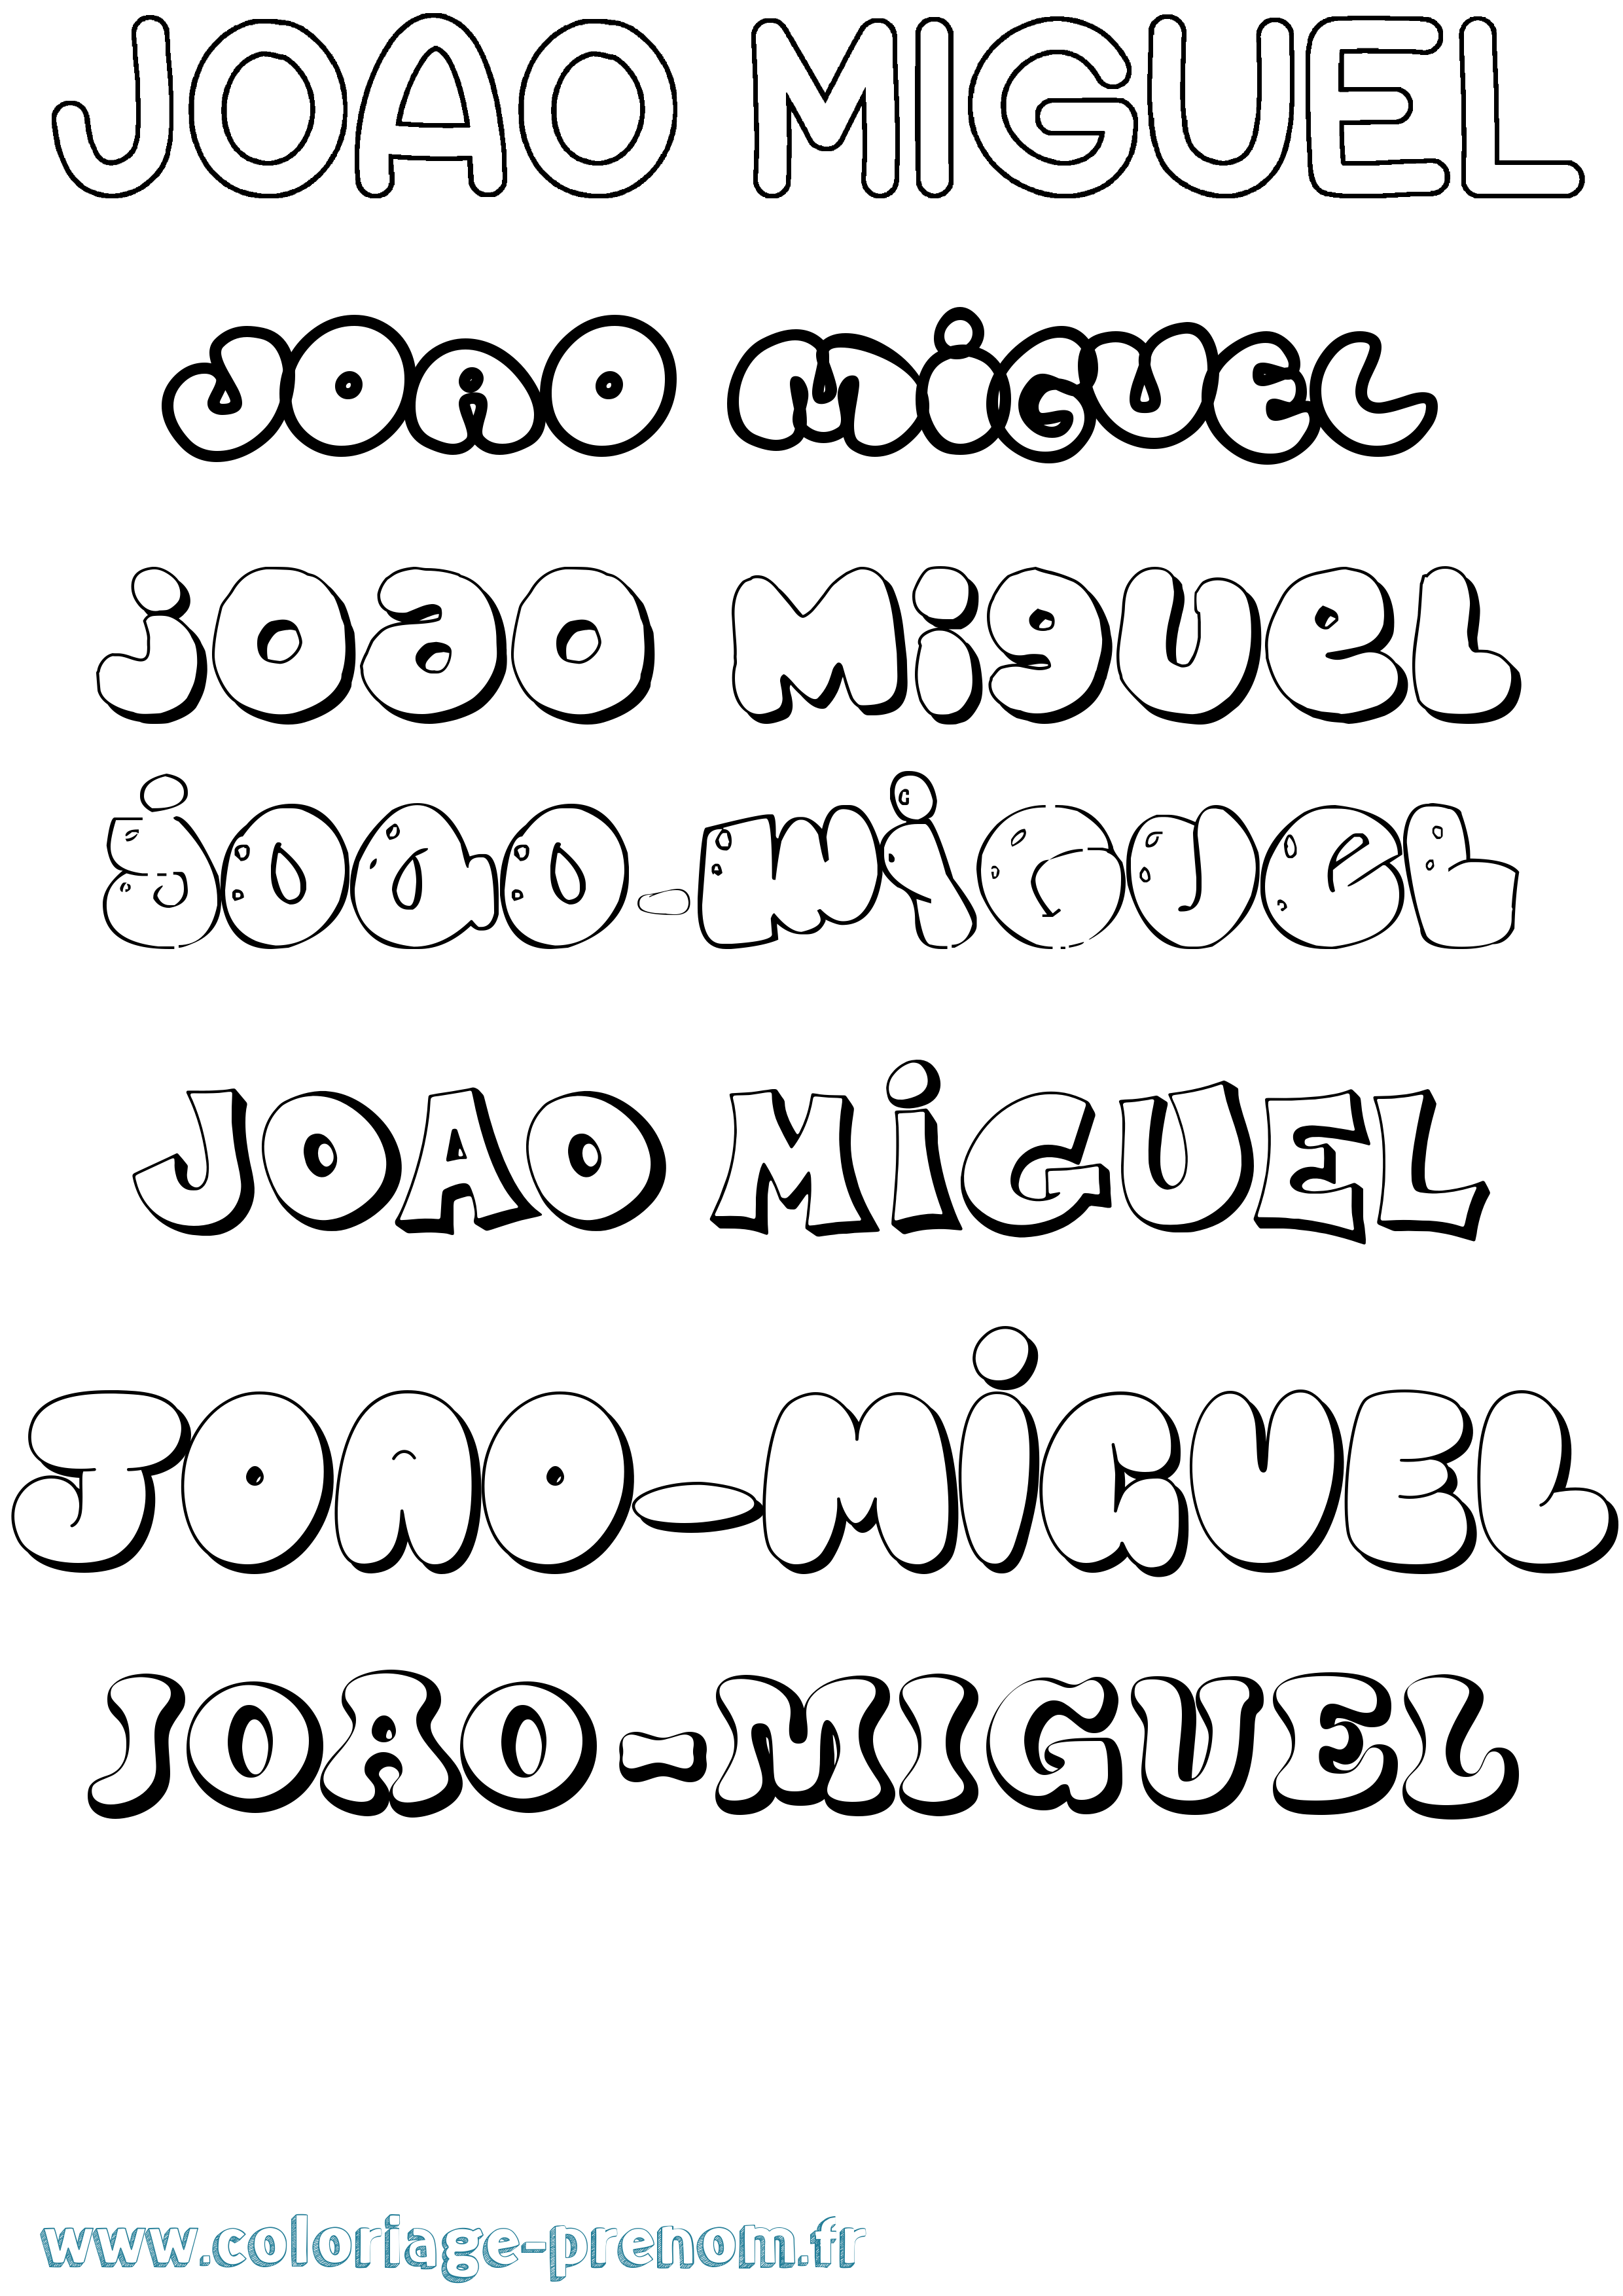 Coloriage prénom Joao-Miguel Bubble